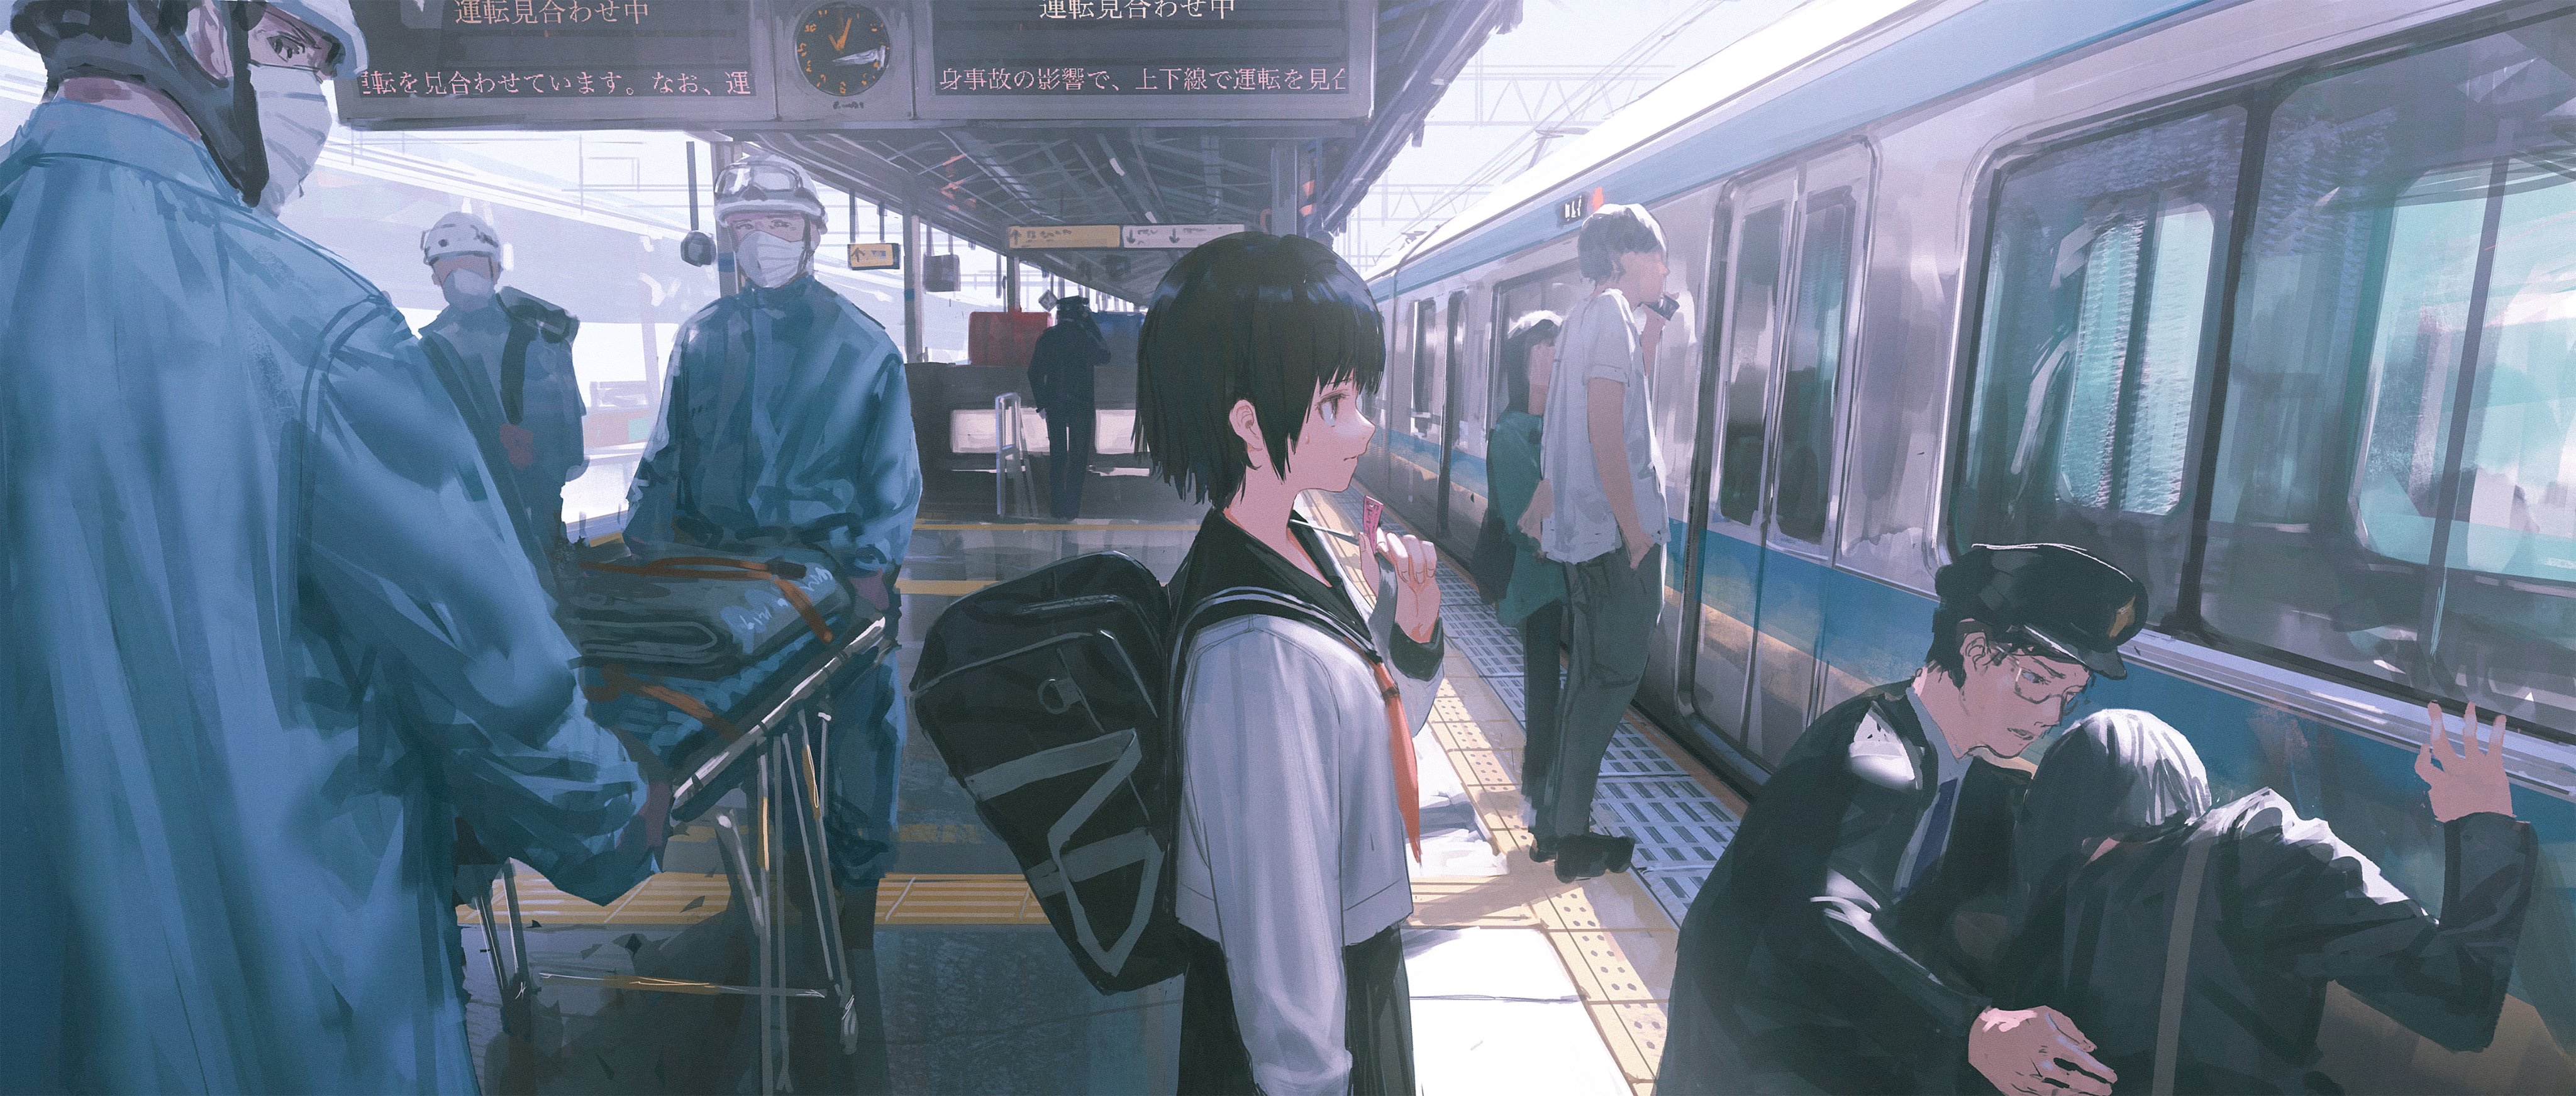 1013068 скачать обои аниме, железнодорожный вокзал, школьная форма, поезд - заставки и картинки бесплатно